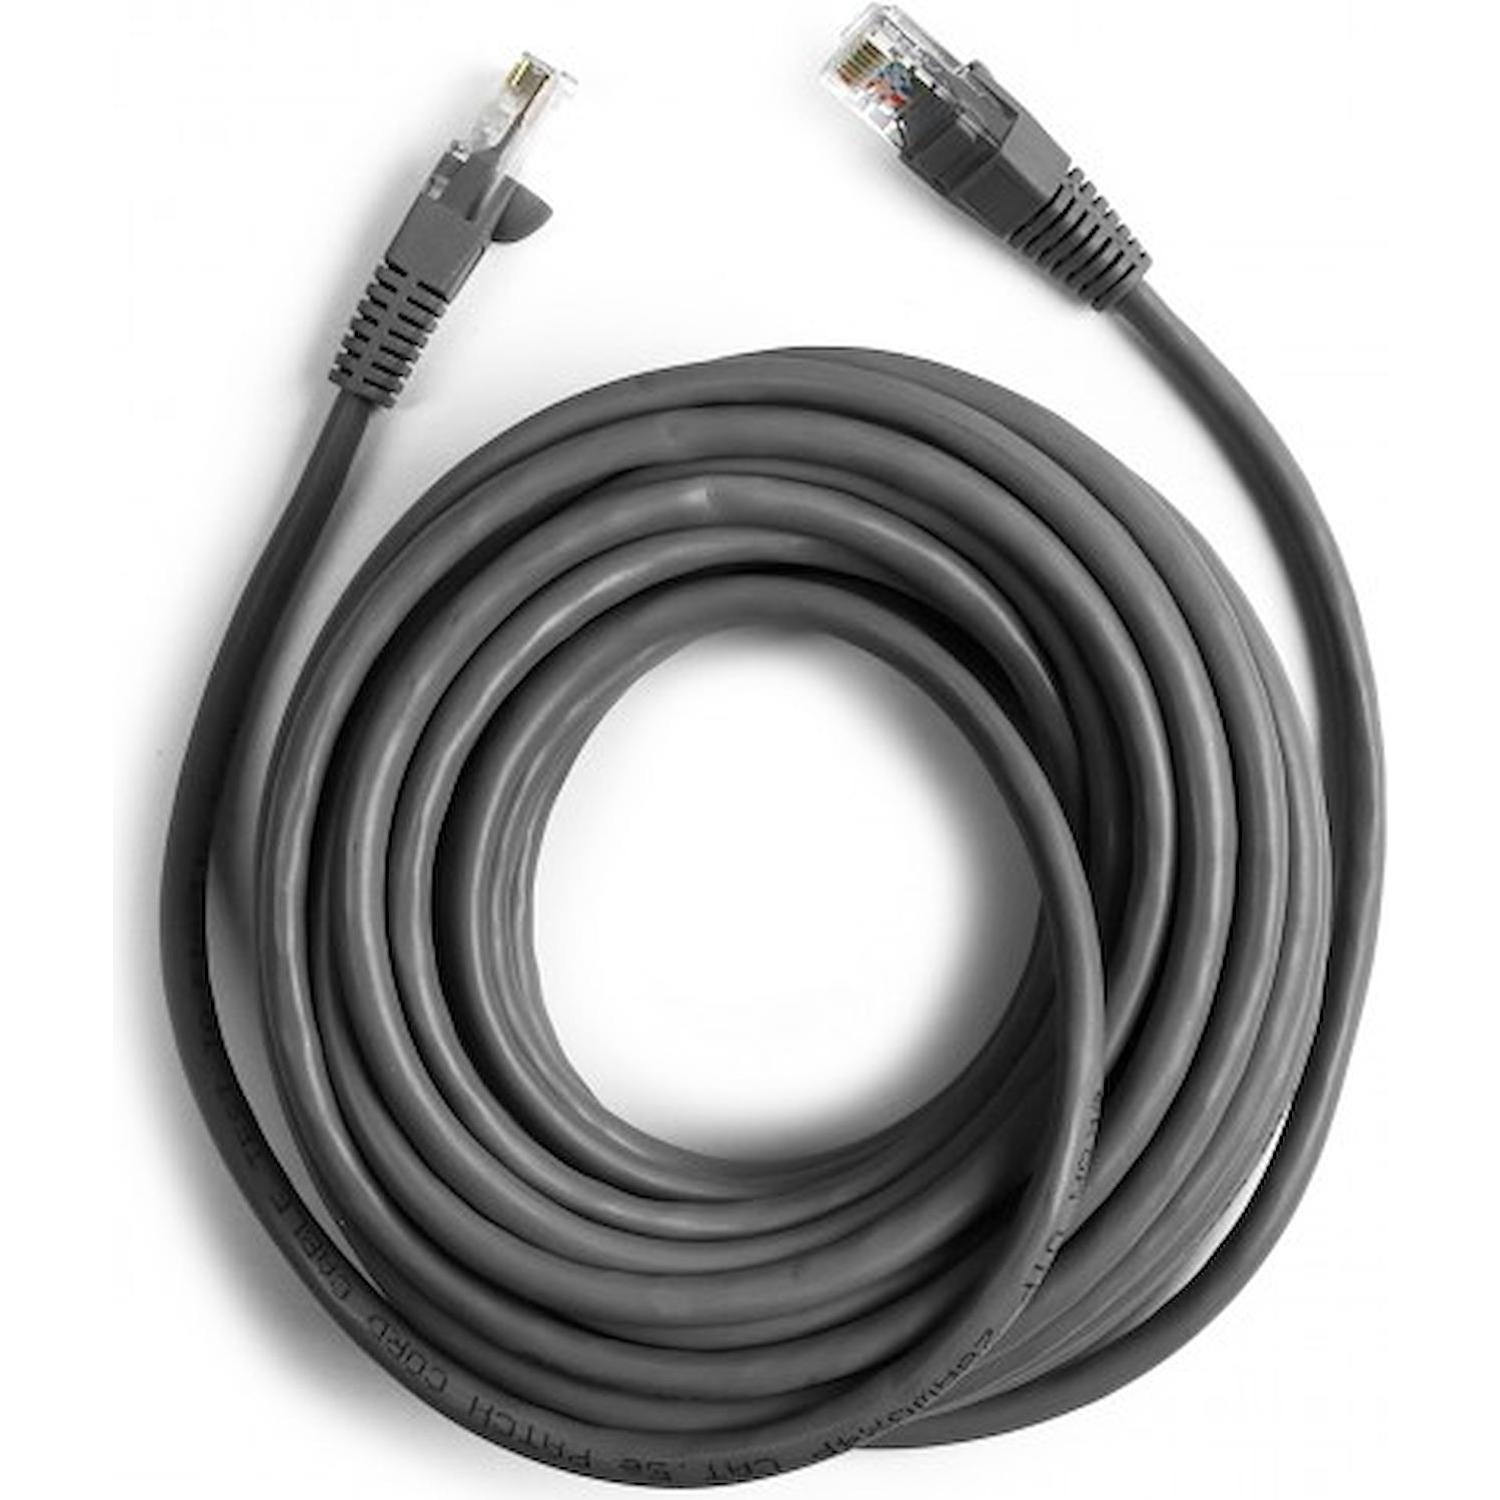 Immagine per Cavo di rete Ekon per PC UTP cat 5e colore grigio,connettori RJ45, lunghezza cavo 10 metri da DIMOStore